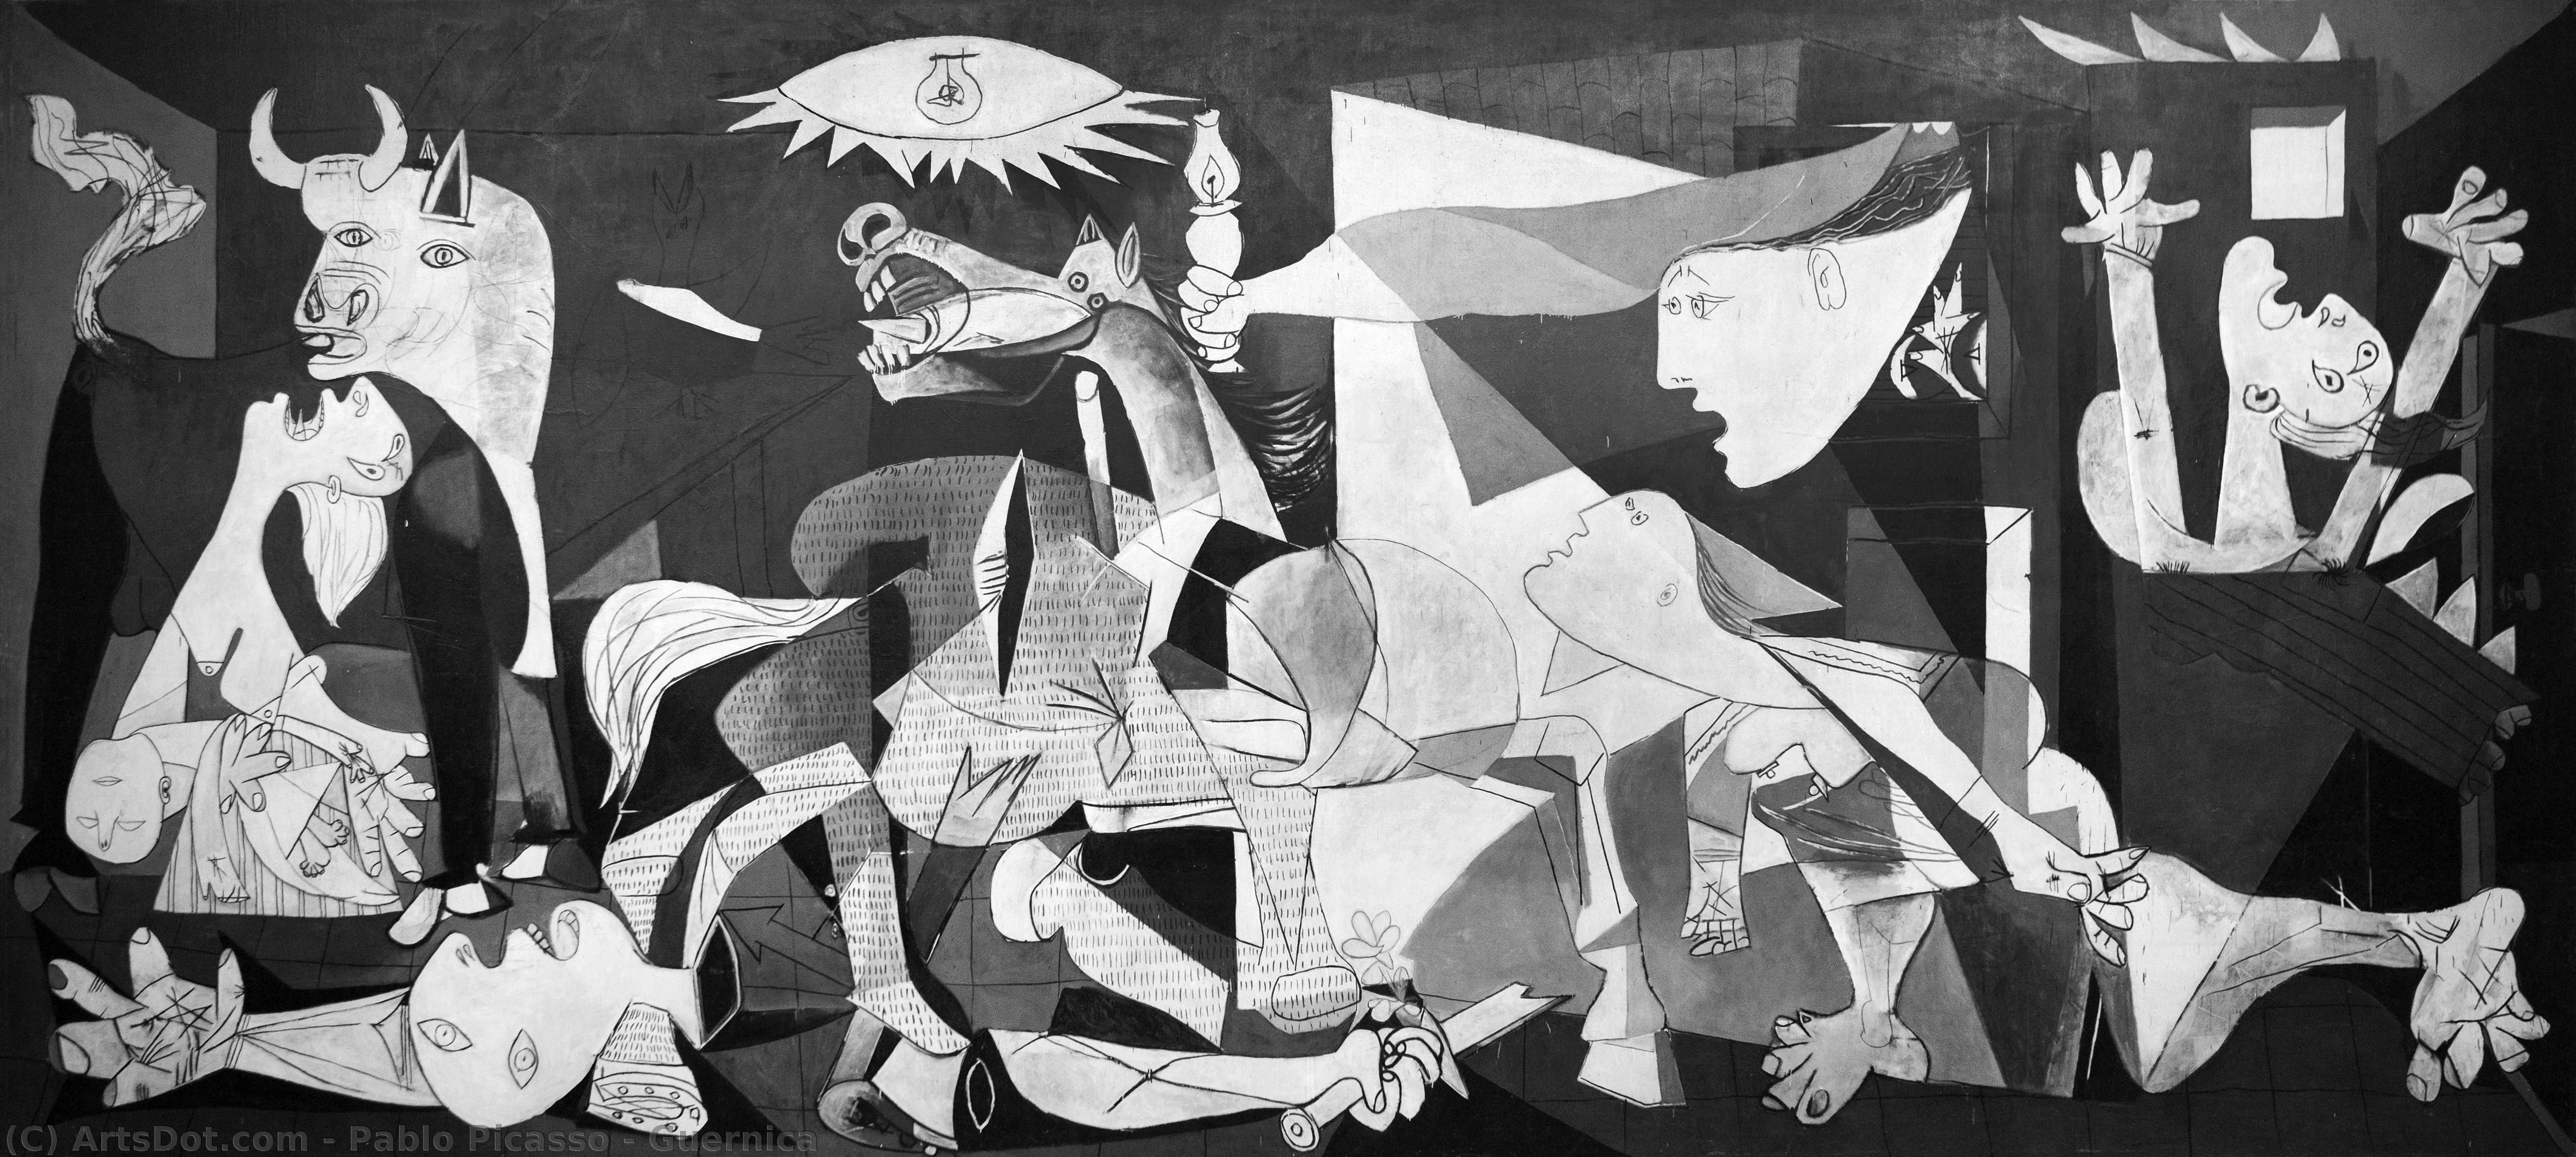 Achat Reproductions D'art Guernica, 1937 de Pablo Picasso (Inspiré par) (1881-1973, Spain) | ArtsDot.com